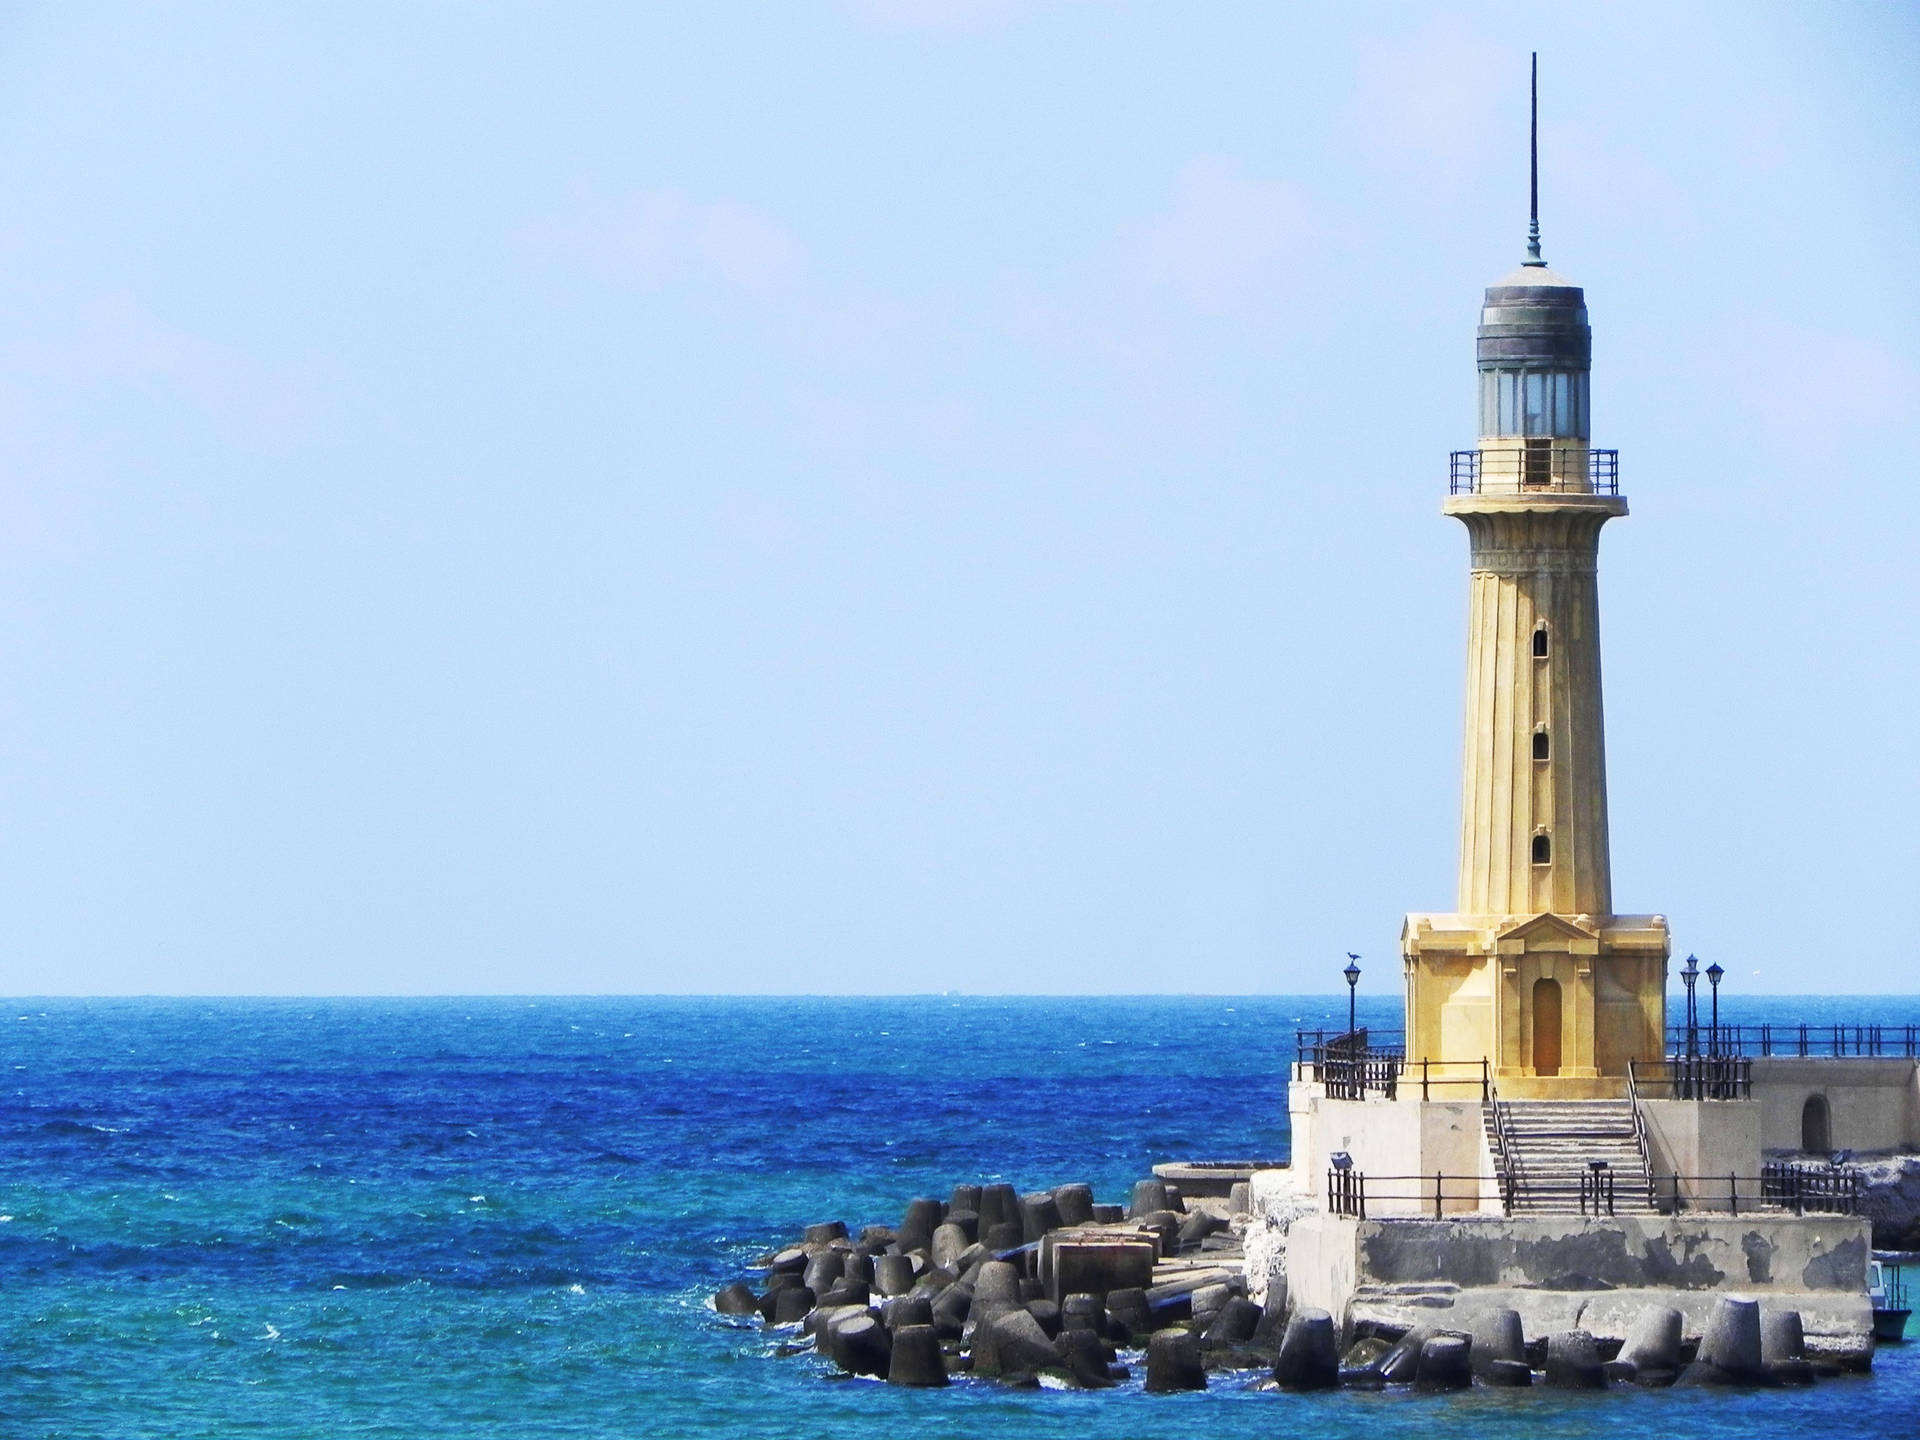 Alexandria Lighthouse And Ocean